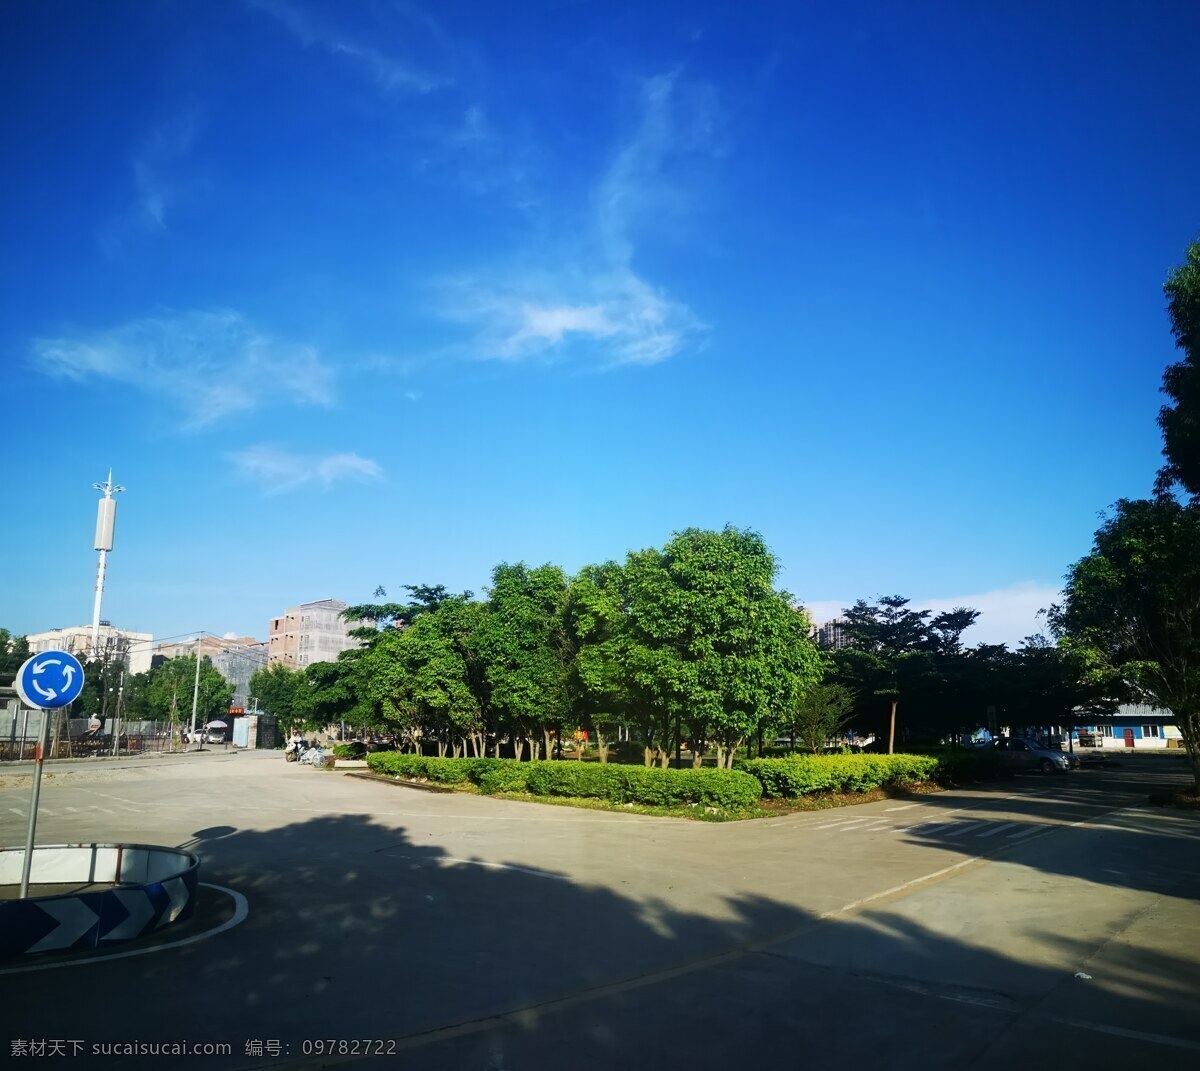 夏日炎炎 夏日 蓝天 天空蓝 村庄 练车场 绿植 广角 影子 自然景观